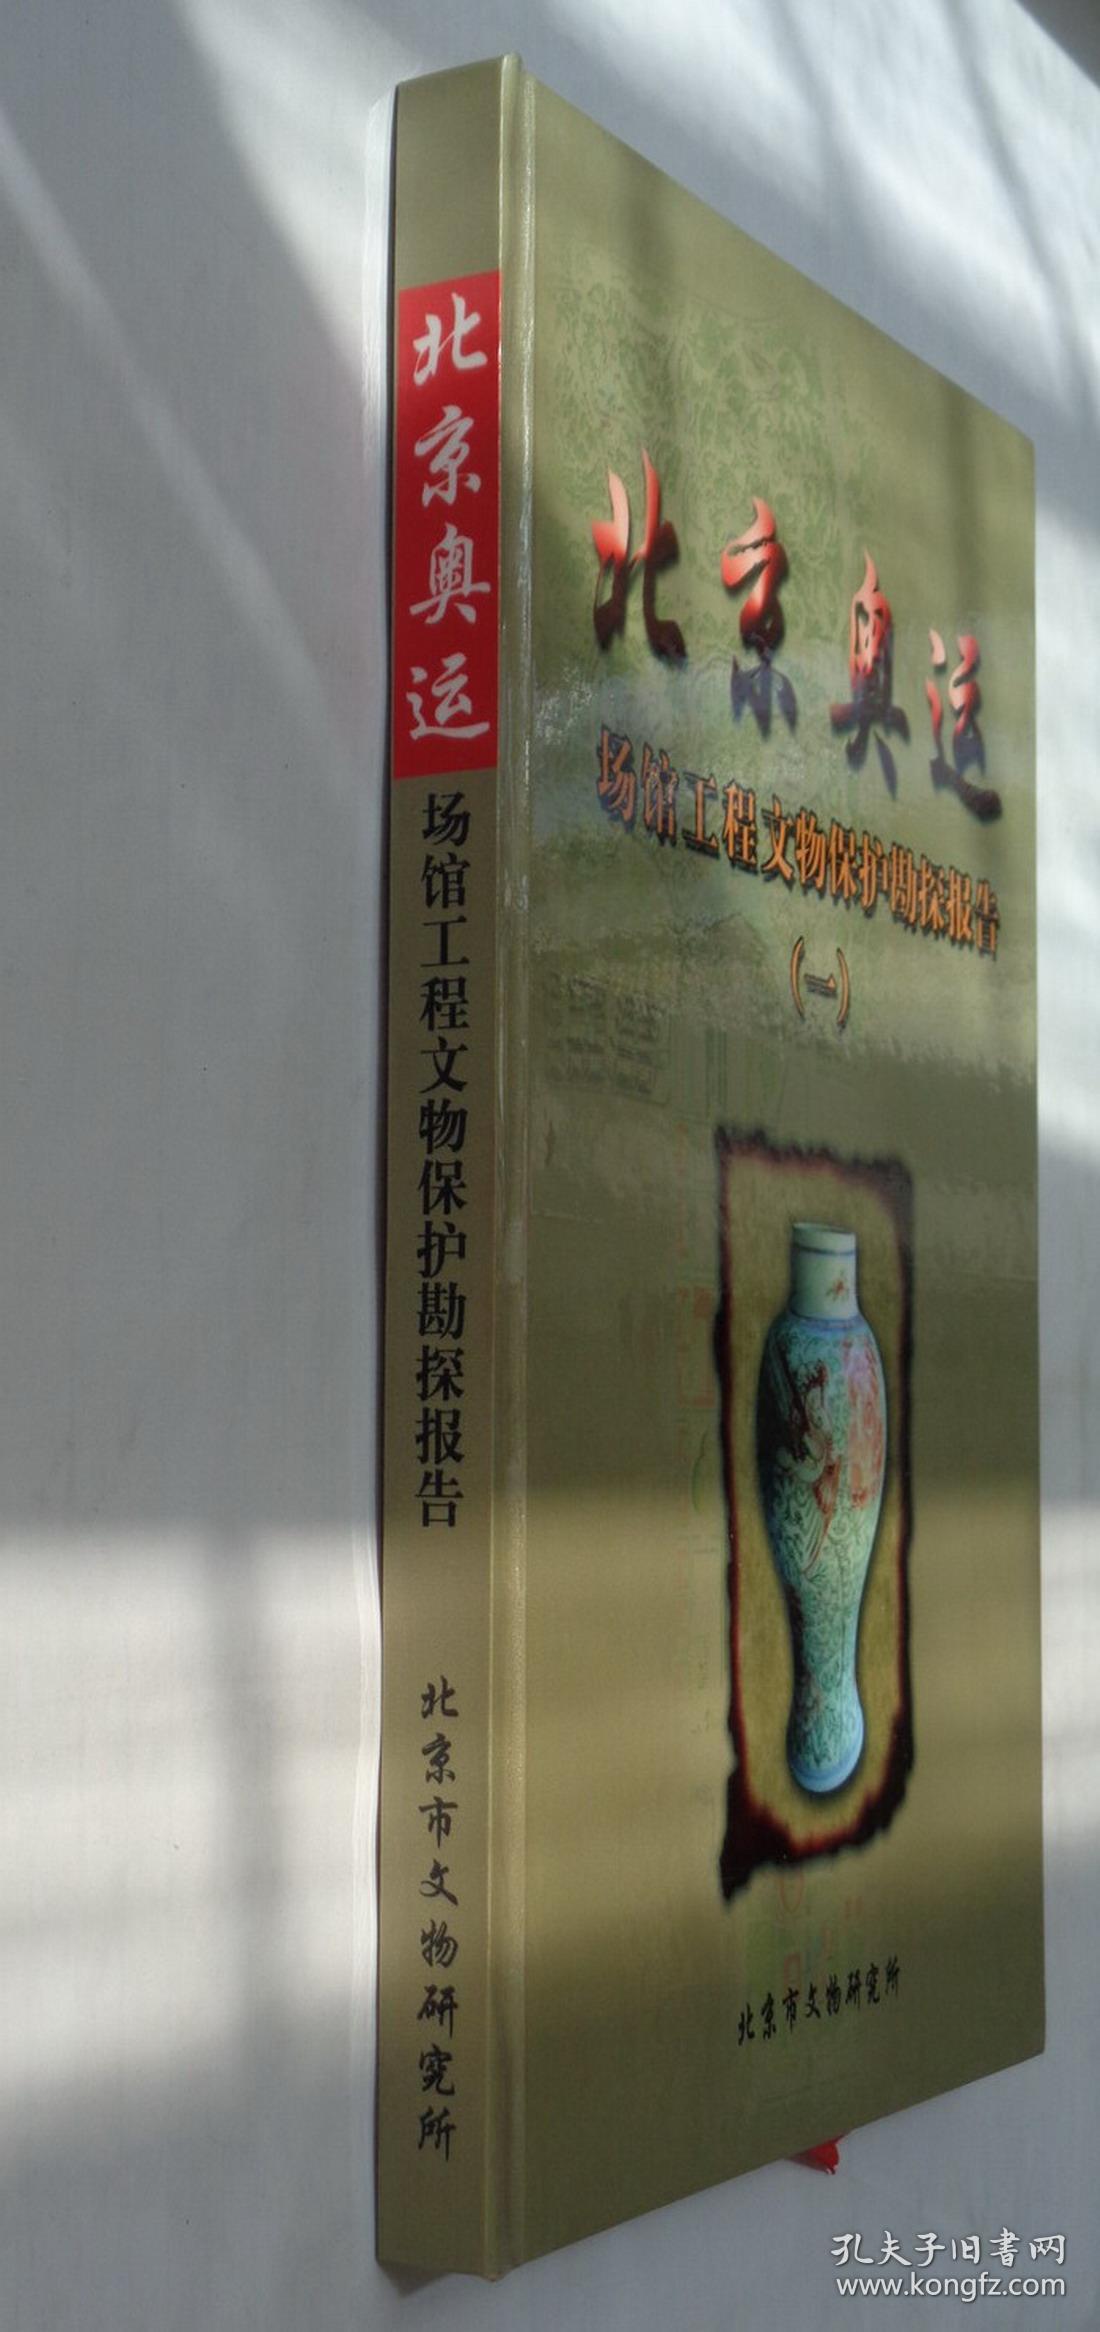 北京奥运场馆工程文物保护勘探报告(一) 内大量